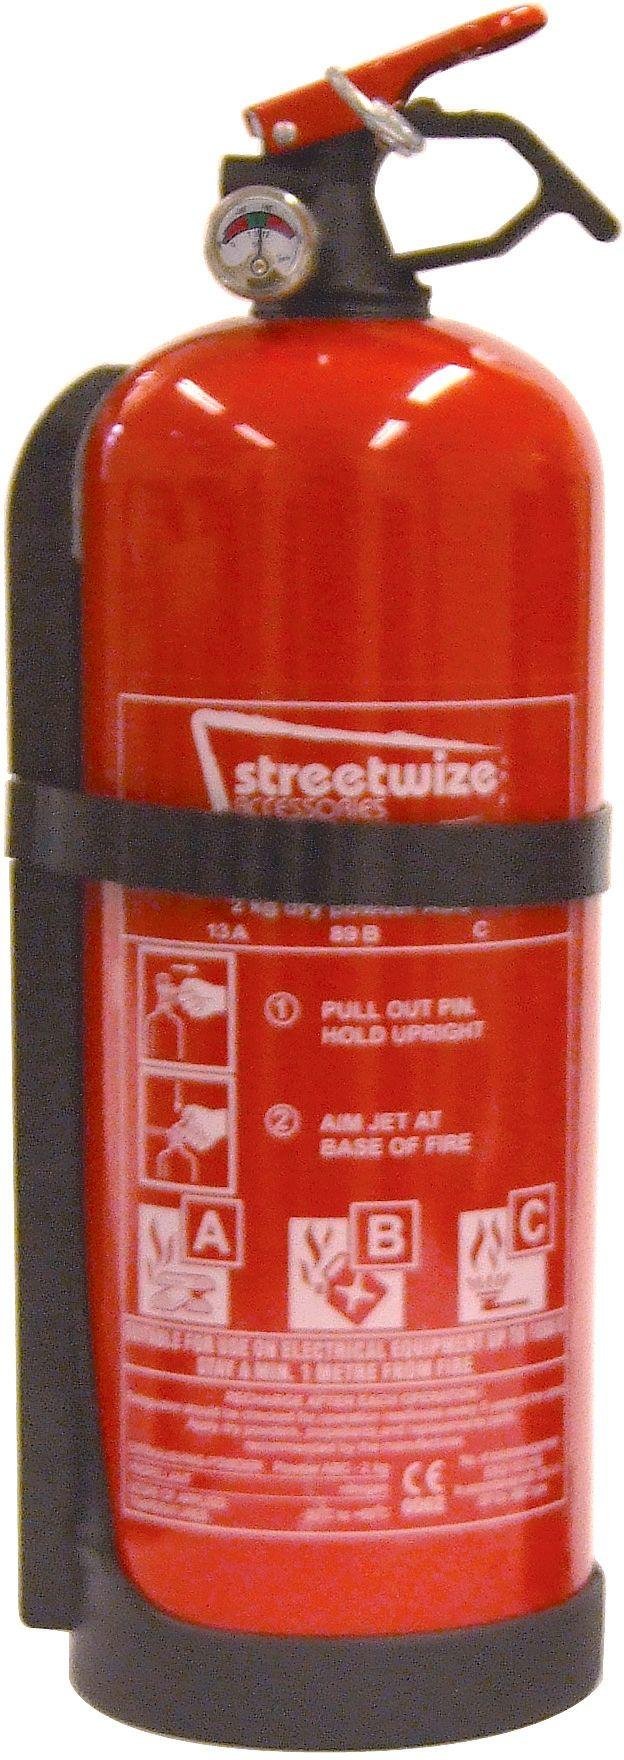 Streetwize 2kg Dry Powder Fire Extinguisher